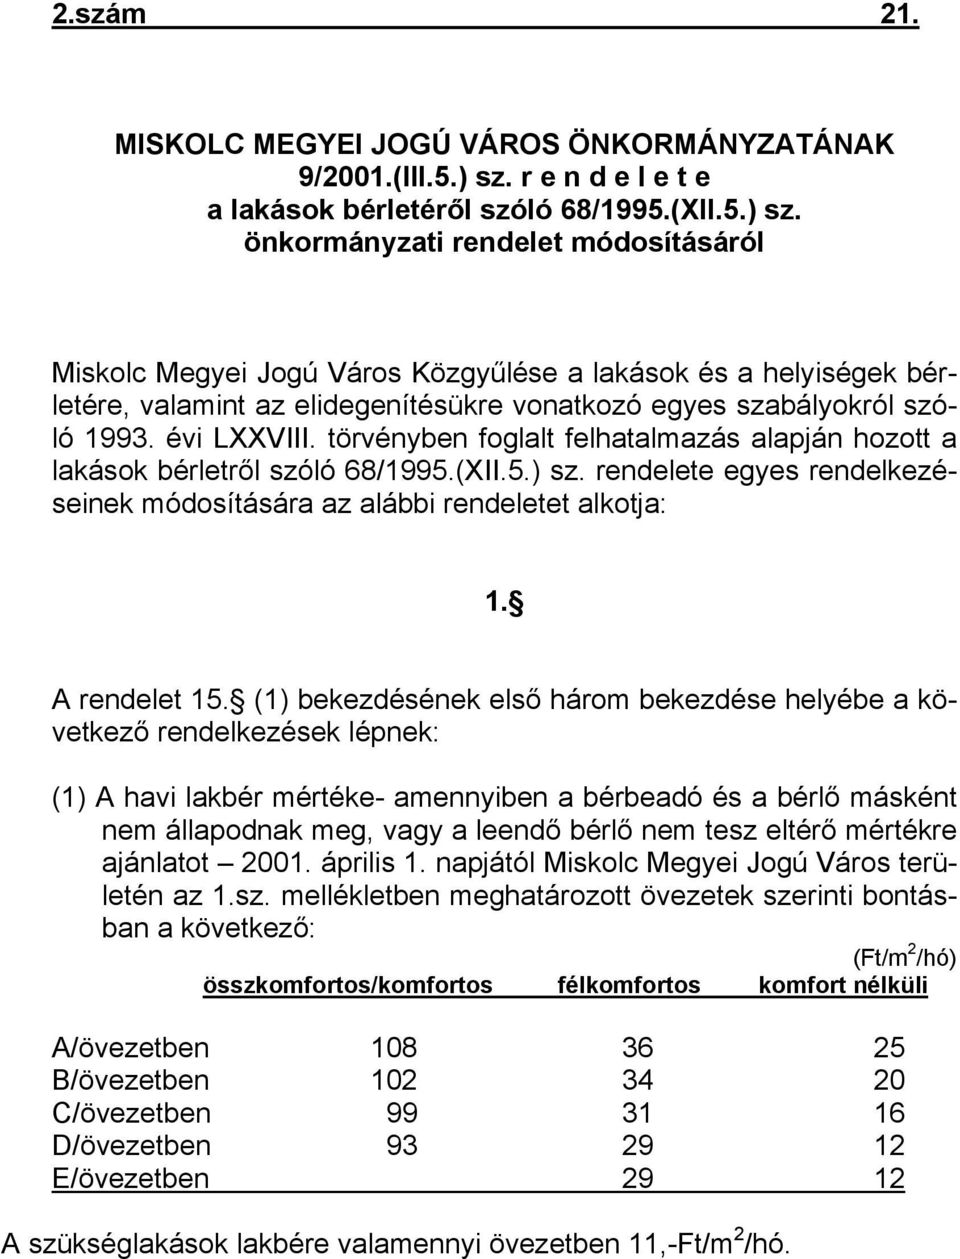 önkormányzati rendelet módosításáról Miskolc Megyei Jogú Város Közgyűlése a lakások és a helyiségek bérletére, valamint az elidegenítésükre vonatkozó egyes szabályokról szóló 1993. évi LXXVIII.